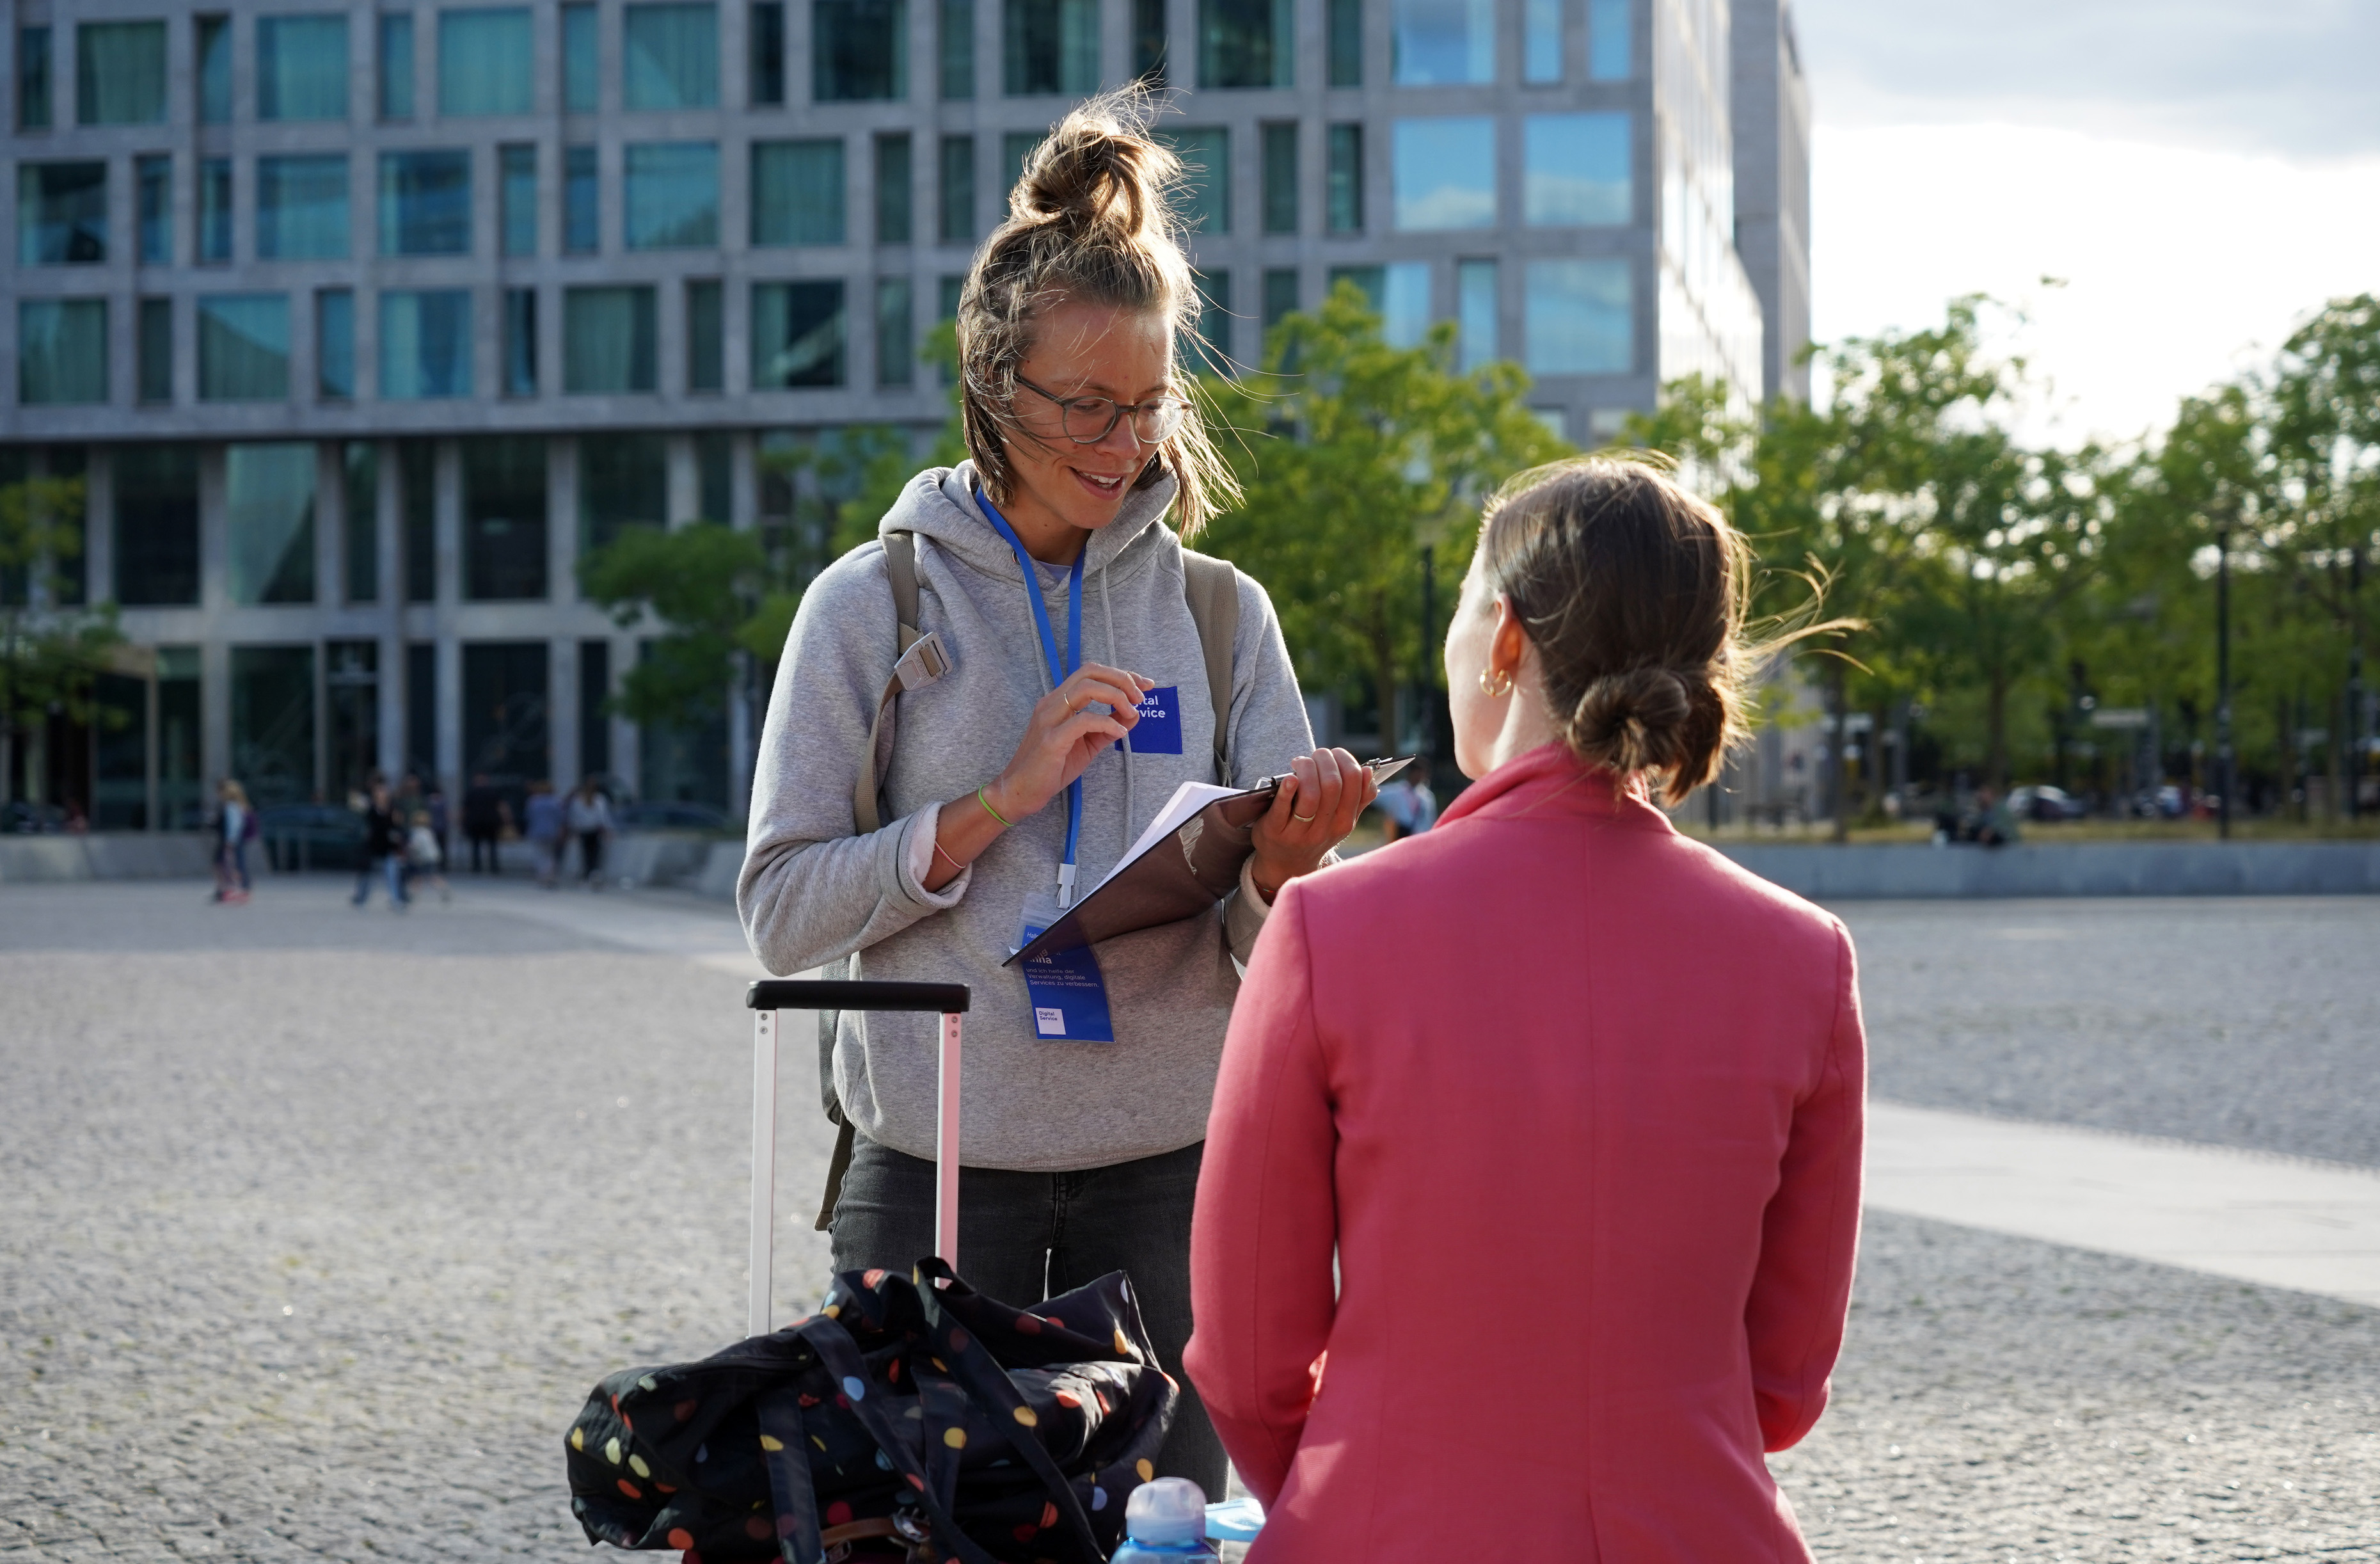 Zwei junge Frauen sprechen mit einander: eine steht, die andere sitzt; die stehende Frau hält ein Klemmbrett, trägt einen Kaputzenpullover mit Logo des DigitalService und ein blaues Namensschild, die sitzende Frau trägt einen pinken Blazer und goldene Ohrringe und schaut sie an.